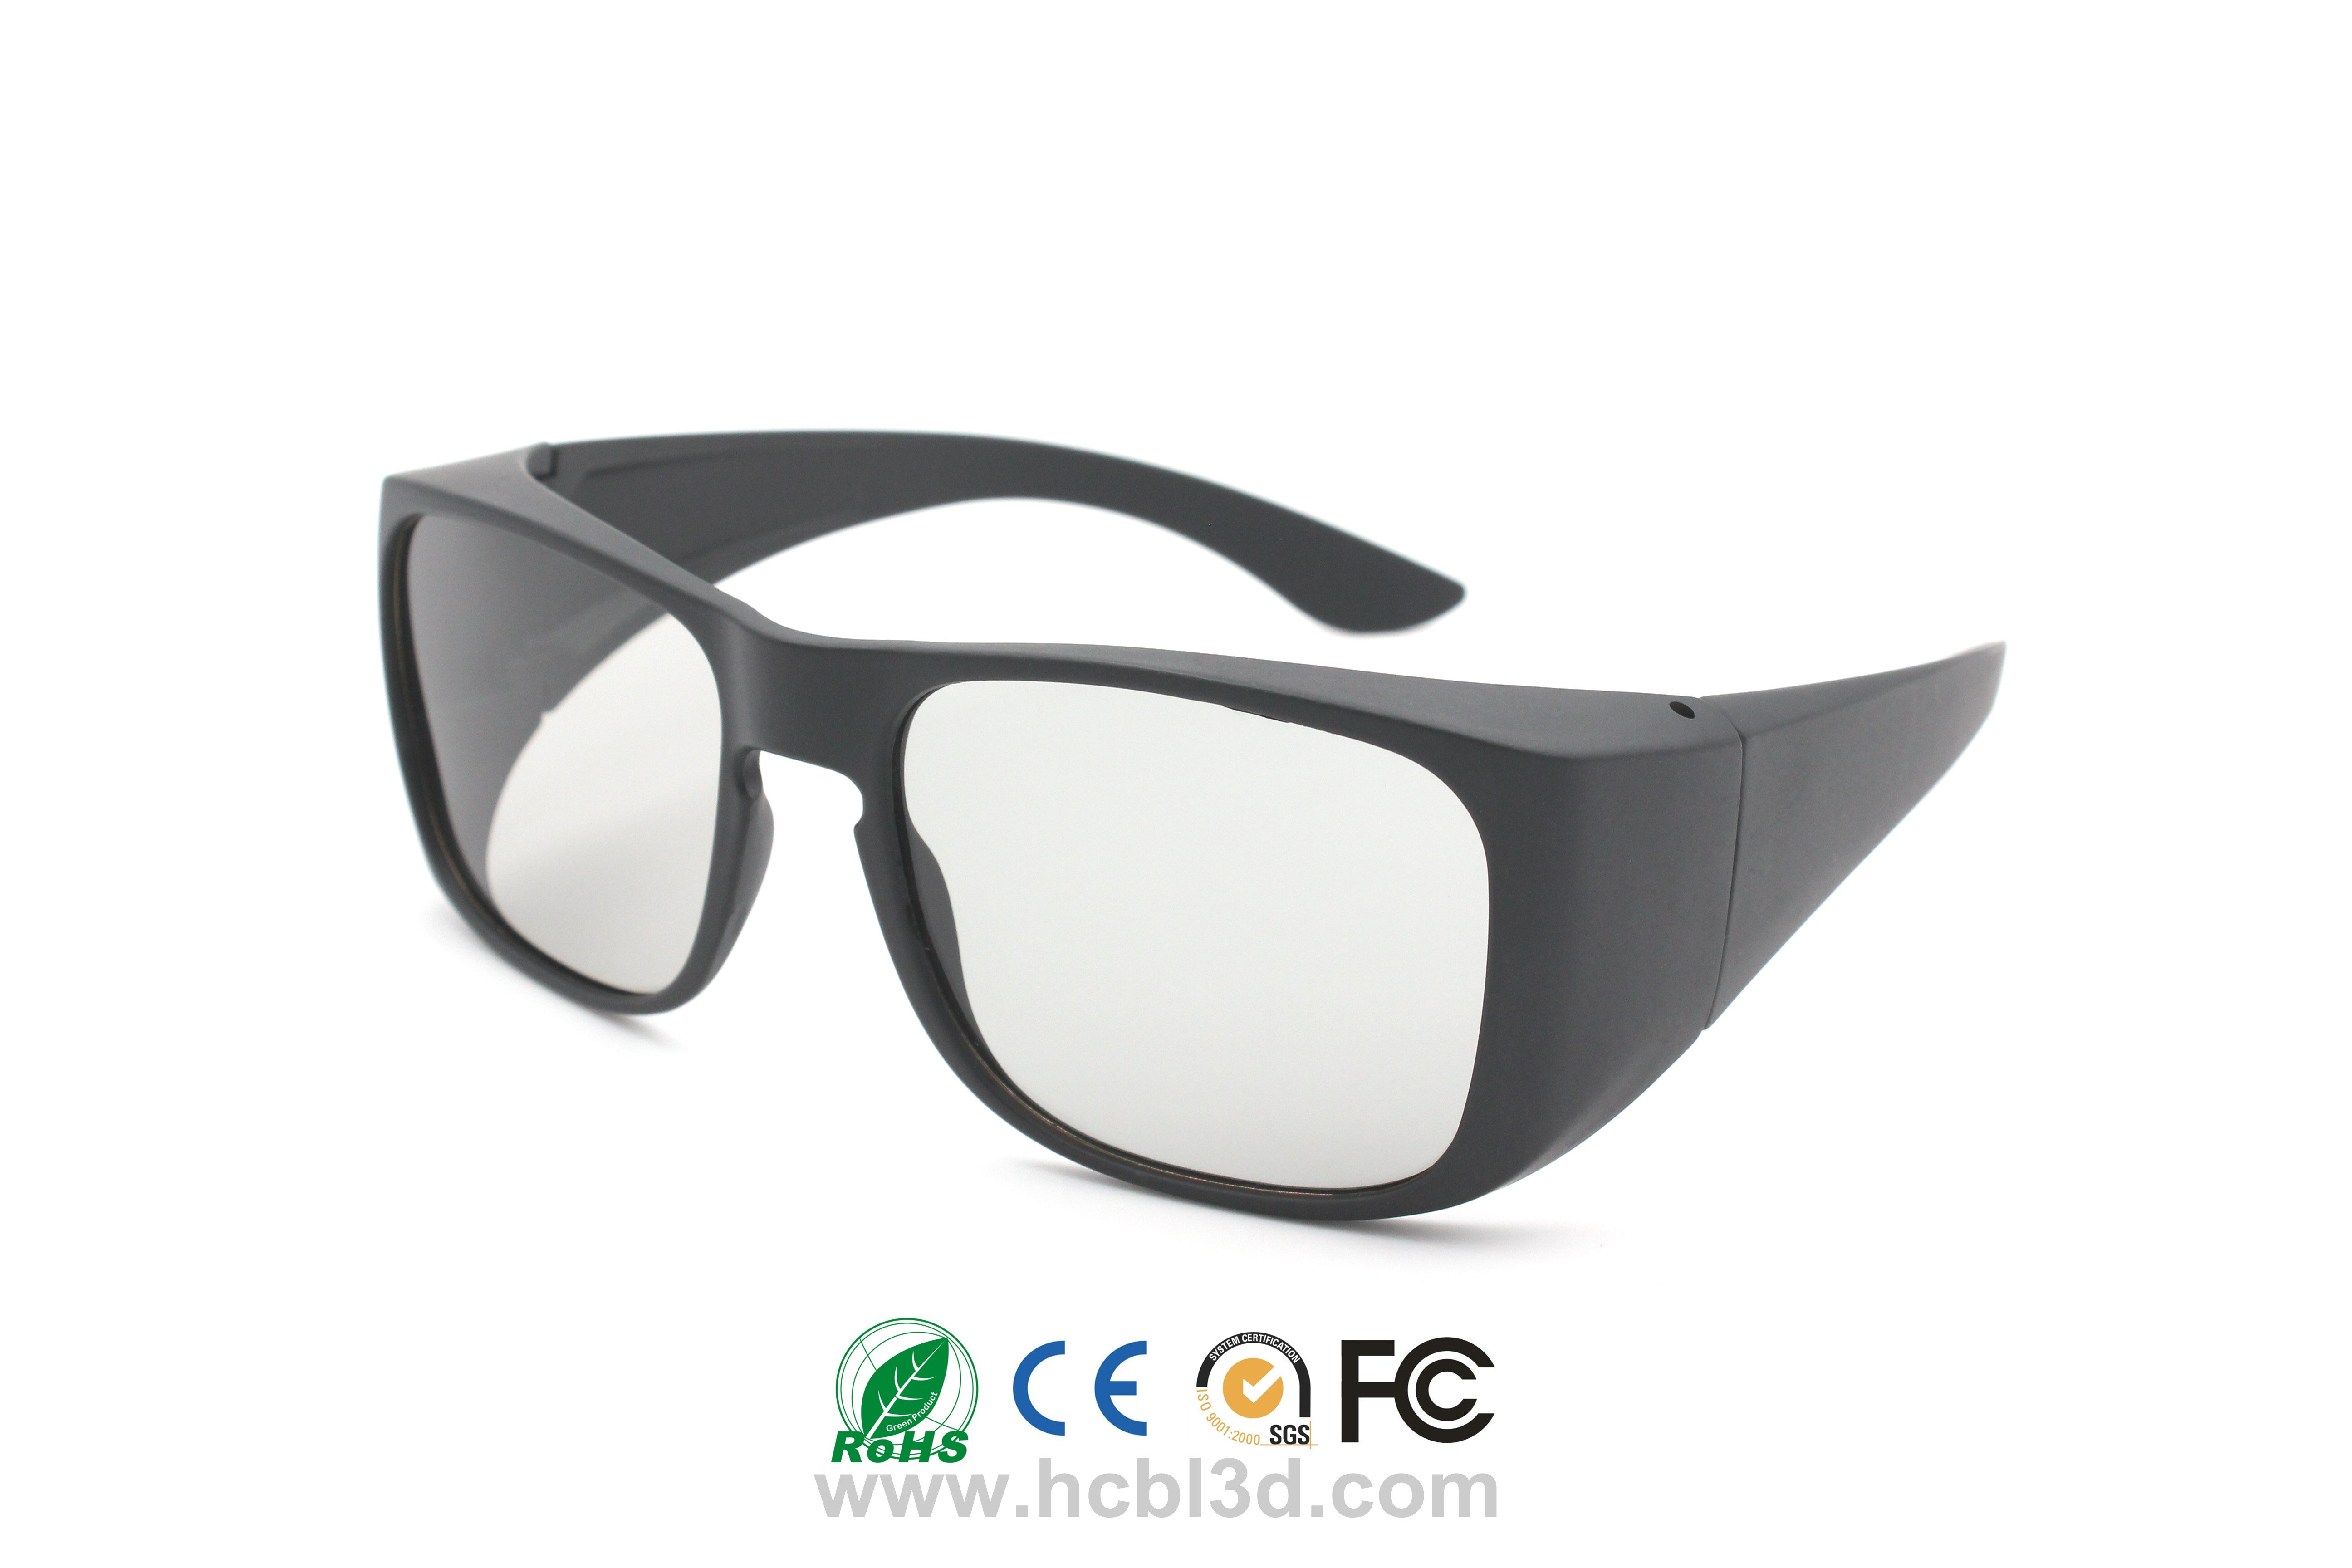 3D-очки в большой оправе, тип «Караван», широкое поле зрения для цифровых 3D-кинотеатров